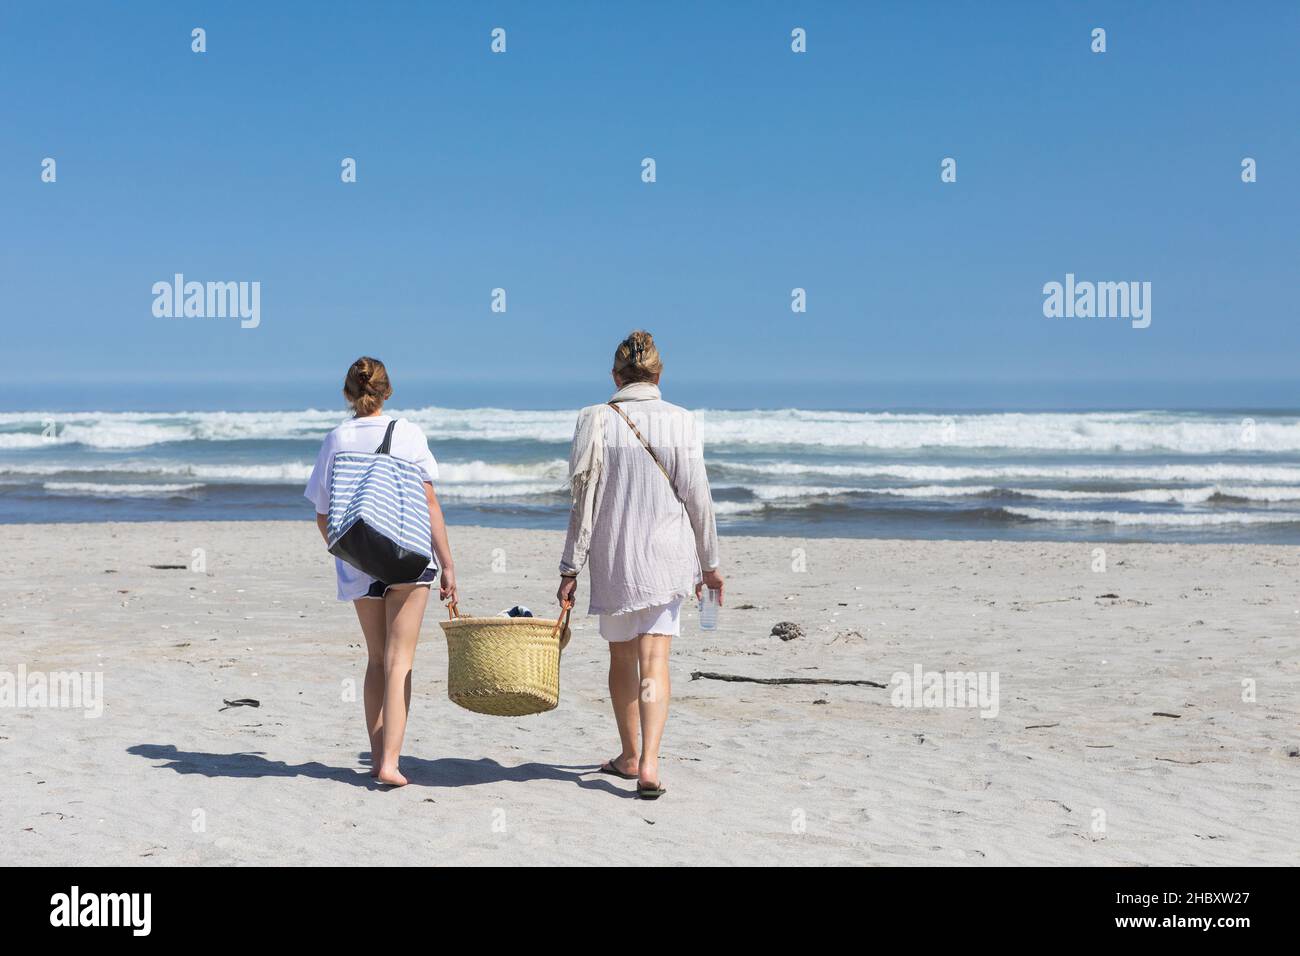 Mutter und Tochter im Teenageralter, die mit einem Korb an einem Sandstrand spazieren gehen Stockfoto